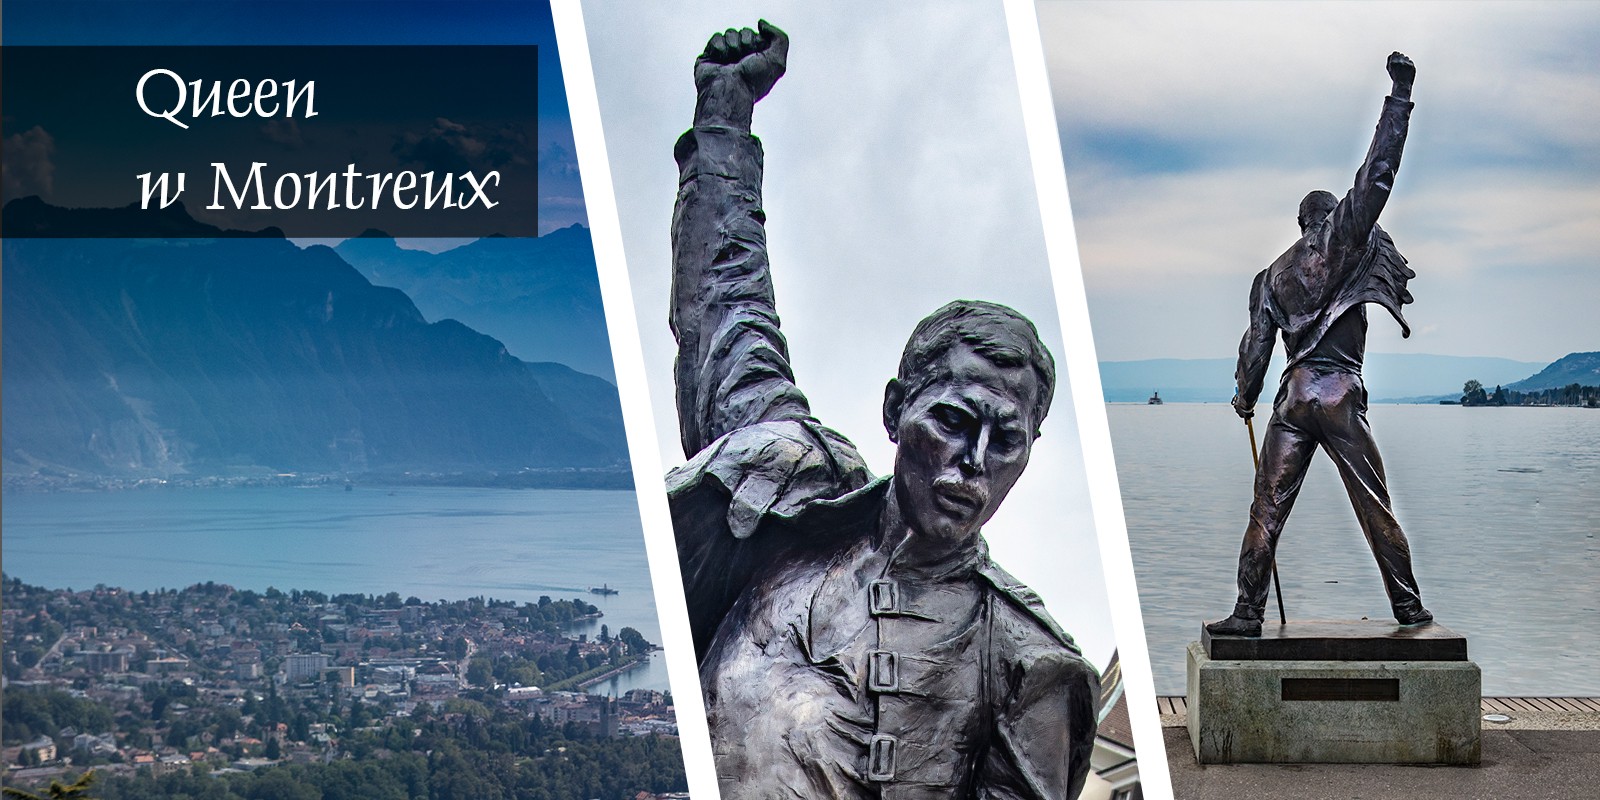 Queen Montreux Szwajcaria Freddie Mercury Studio Experience Jezioro Genewskie Freddie Mercury Pomnik